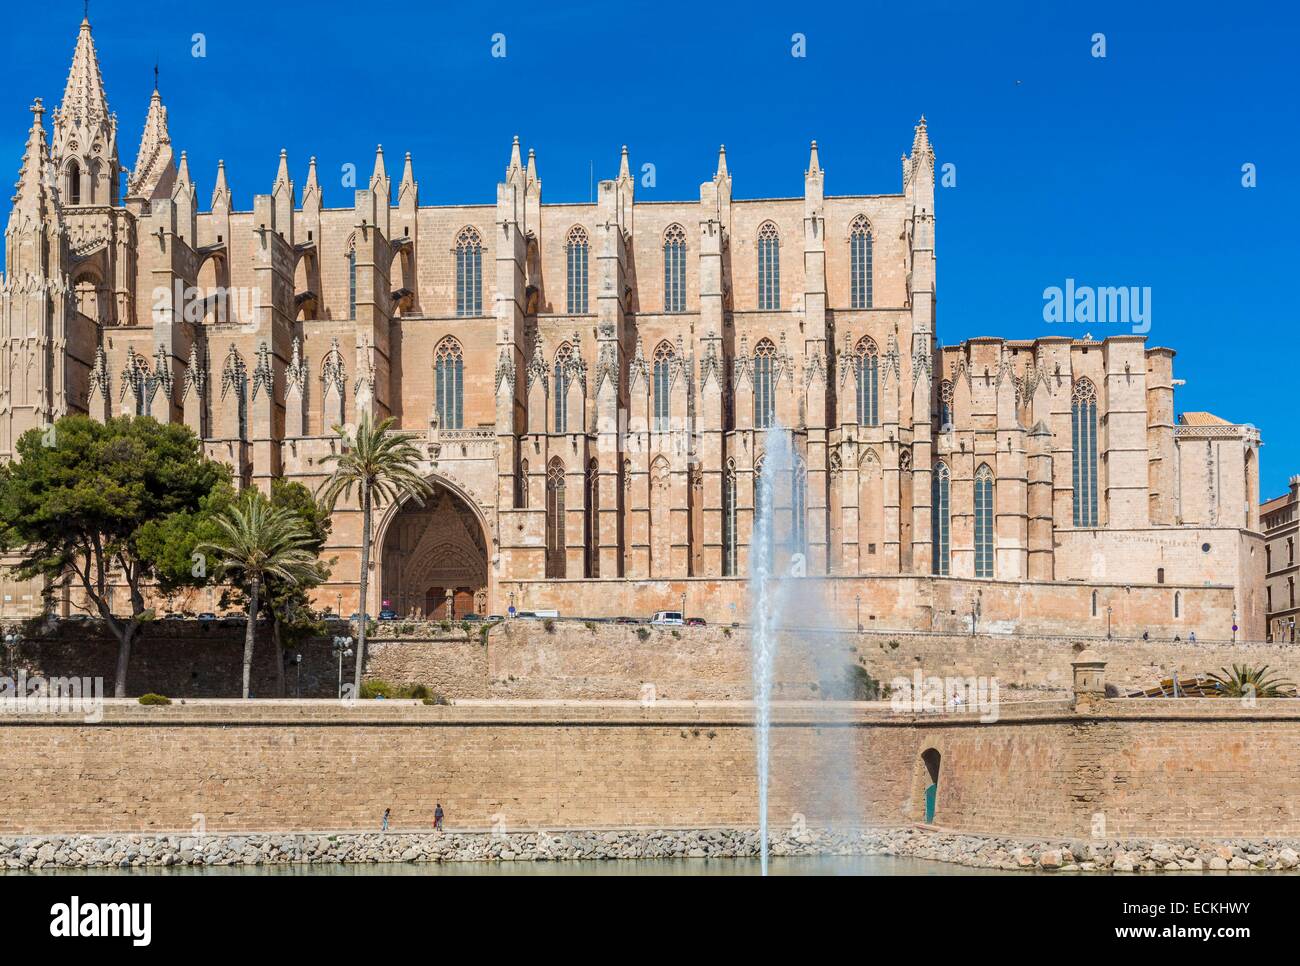 Isole Baleari Spagna, Mallorca, Palma de Mallorca, Cattedrale (La Seu) costruita tra il 1229 e il 1601 e del gotico catalano Foto Stock